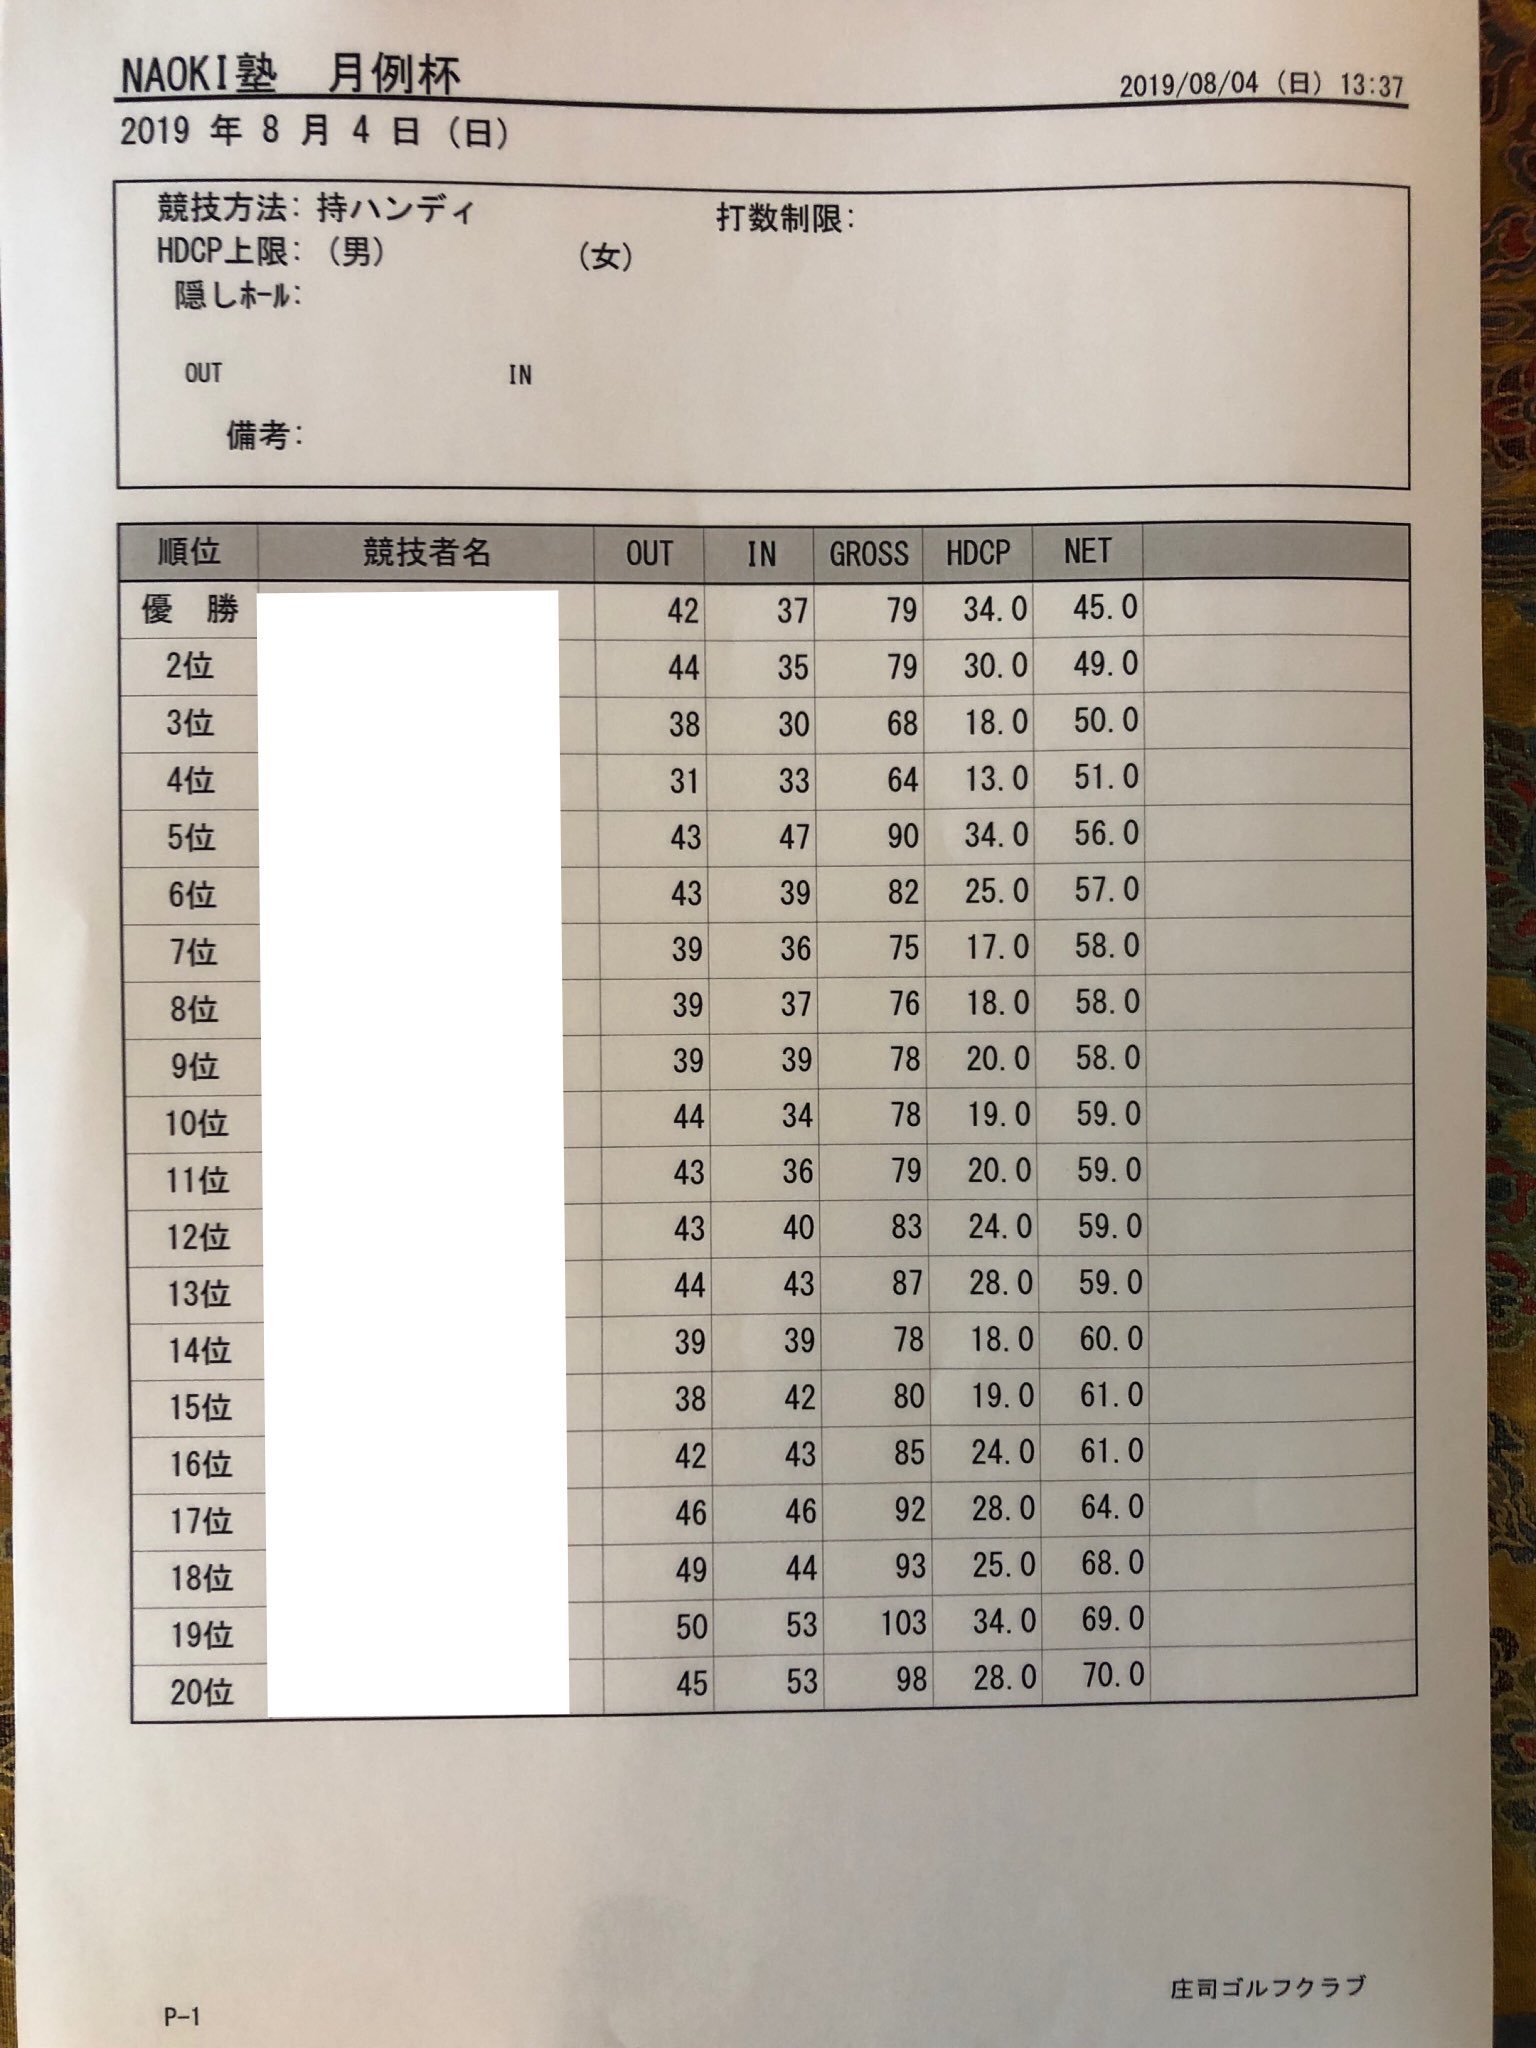 月例杯の結果 庄司ゴルフクラブは パー60ですが 60台2名 70台8名と素晴らしい成績でした 皆さん 暑い中18ホールのスループレーお疲れ 19 08 04 Naokiゴルフ塾 大阪 堺市のゴルフスクール